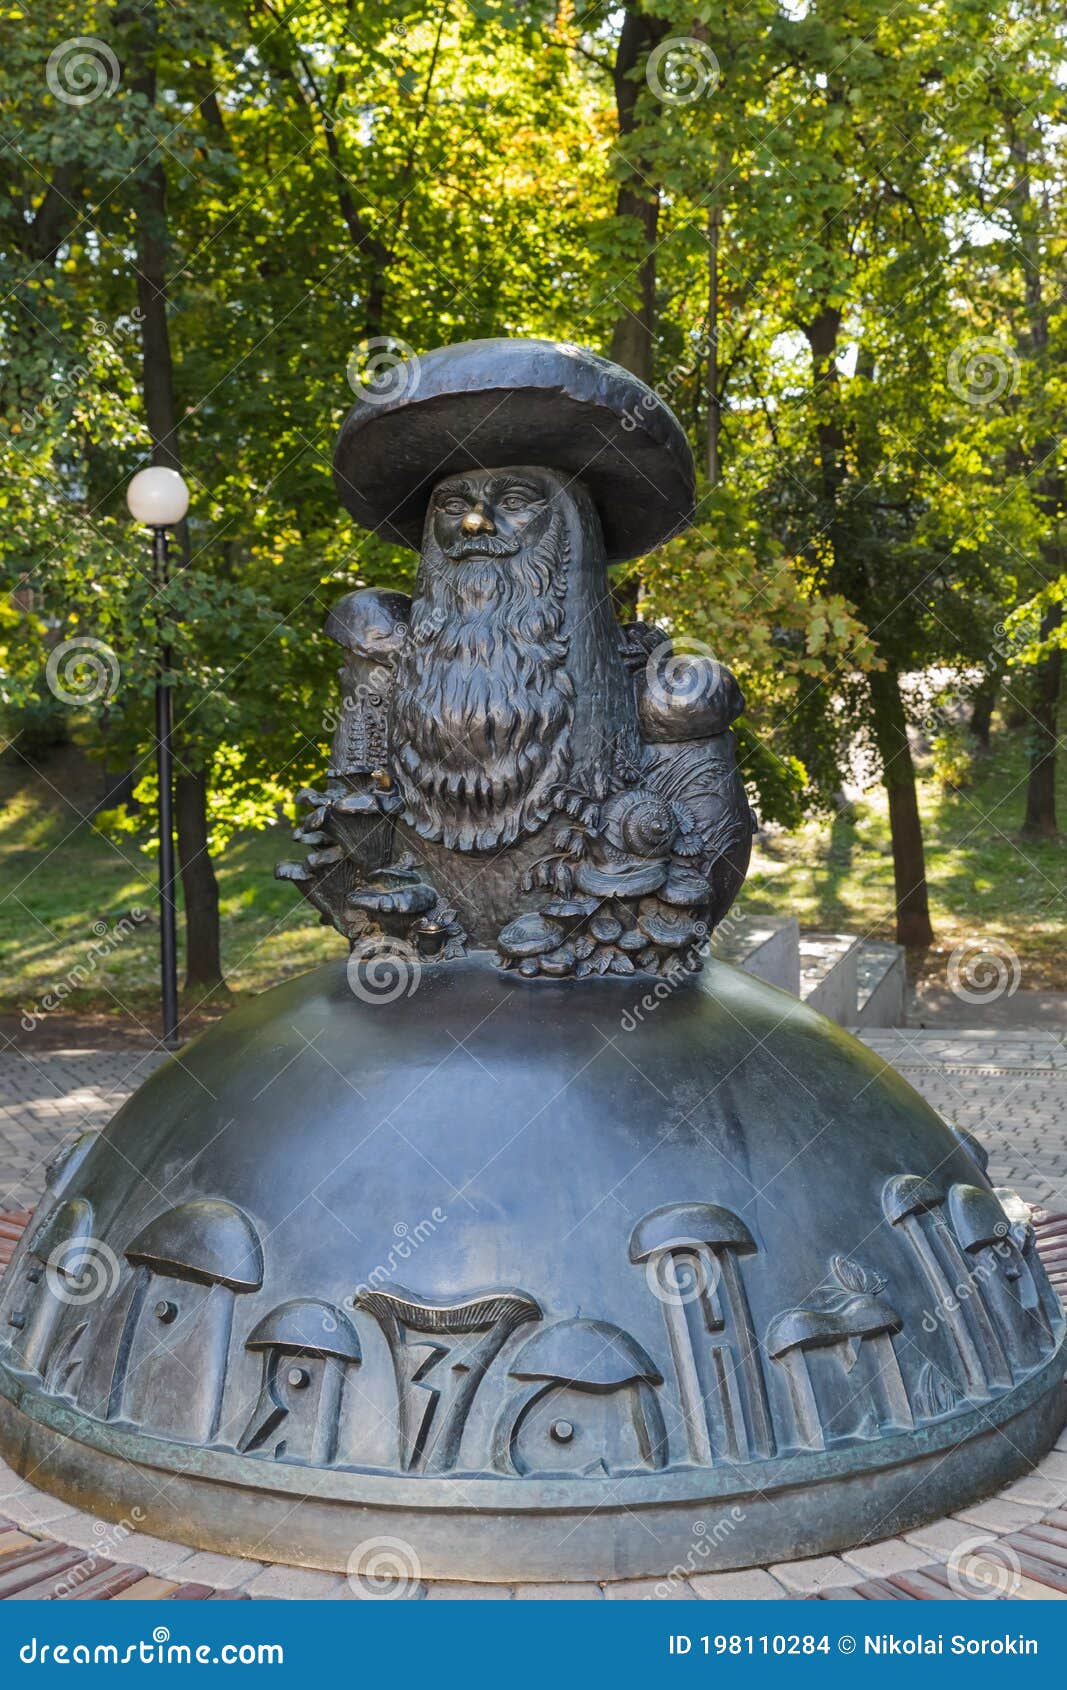 Statue De Champignon Avec Des Yeux De Riazan- En Russie Photo stock - Image  du histoire, sculpture: 198110284